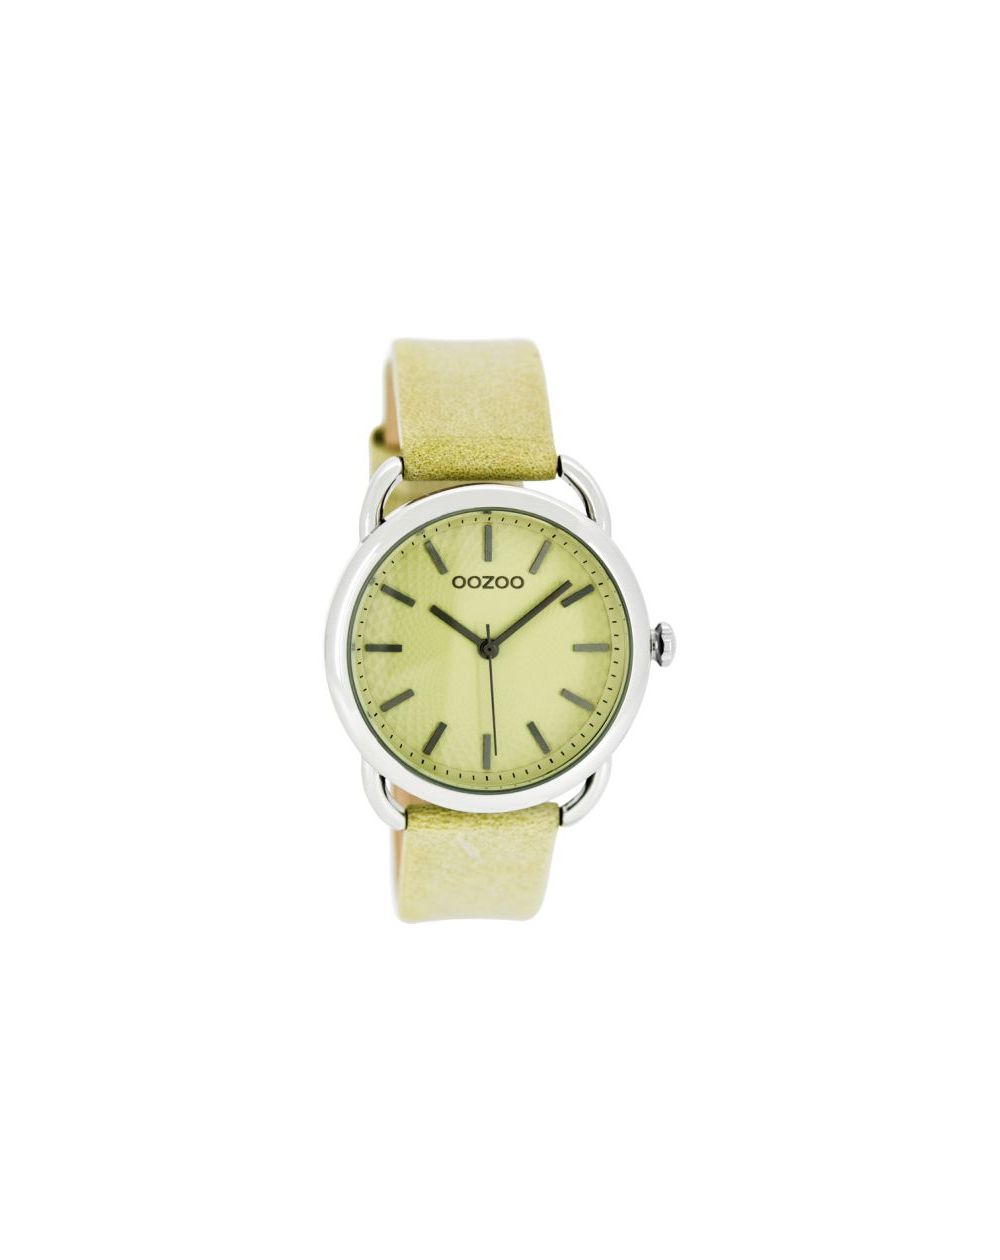 Oozoo montre/watch/horloge C8715